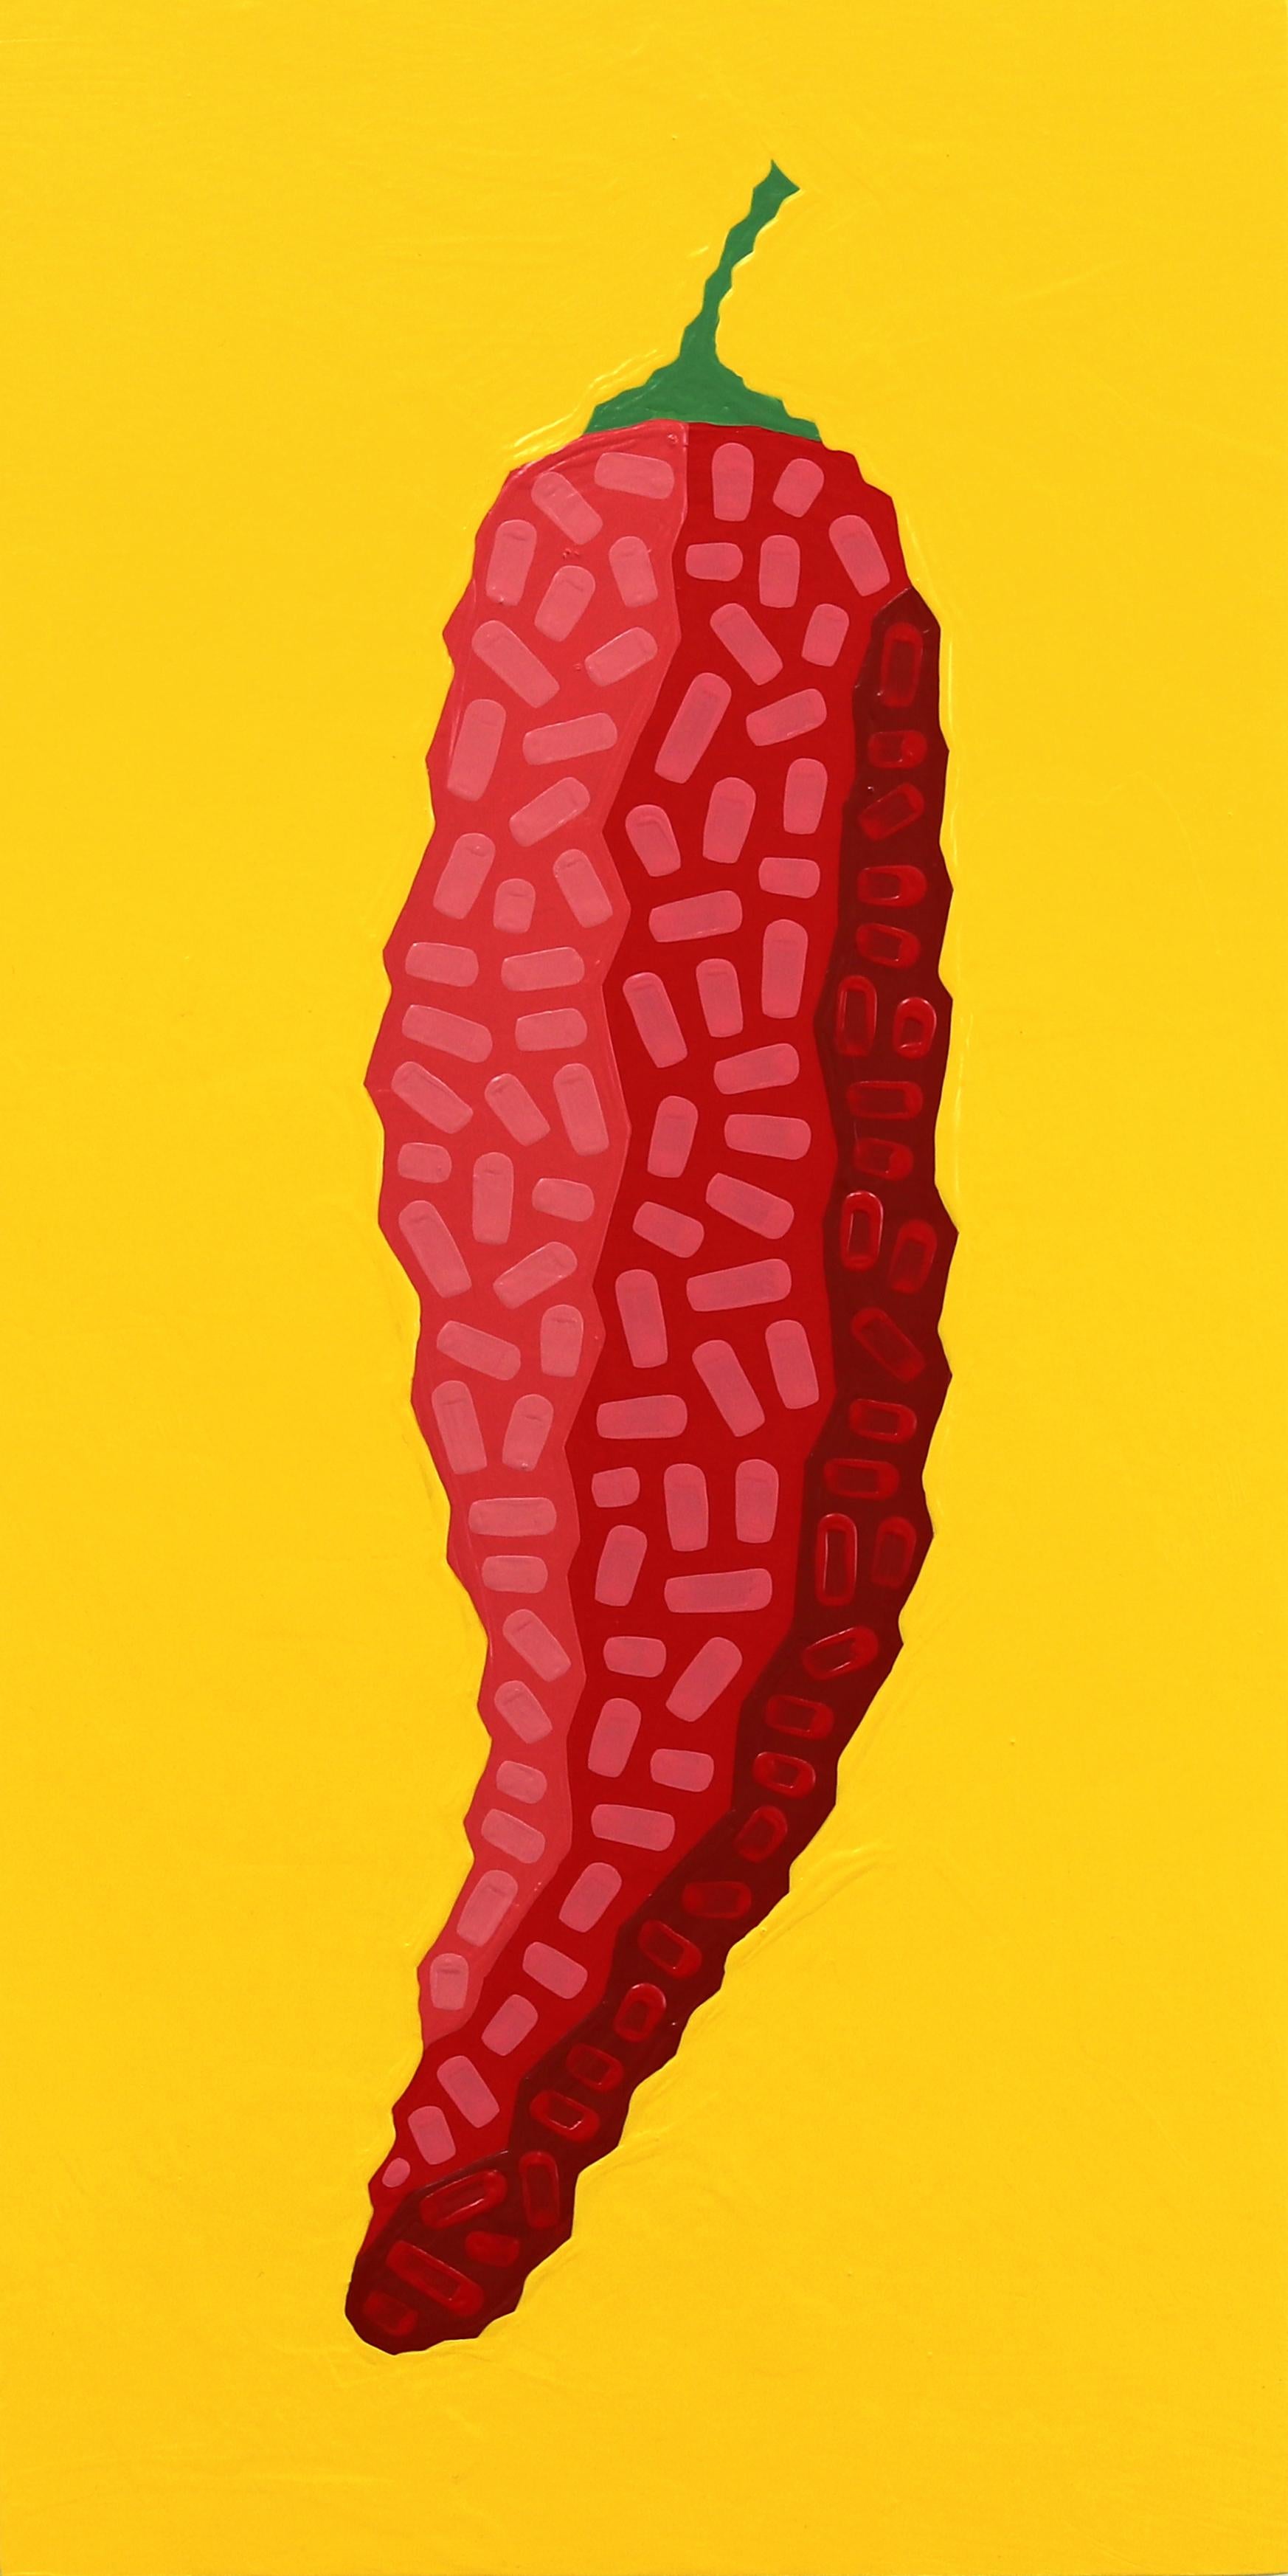 Fresno Amarillo  -  Leuchtend rot-gelbes, vom Südwesten inspiriertes Pop-Art-Gemälde für Lebensmittel